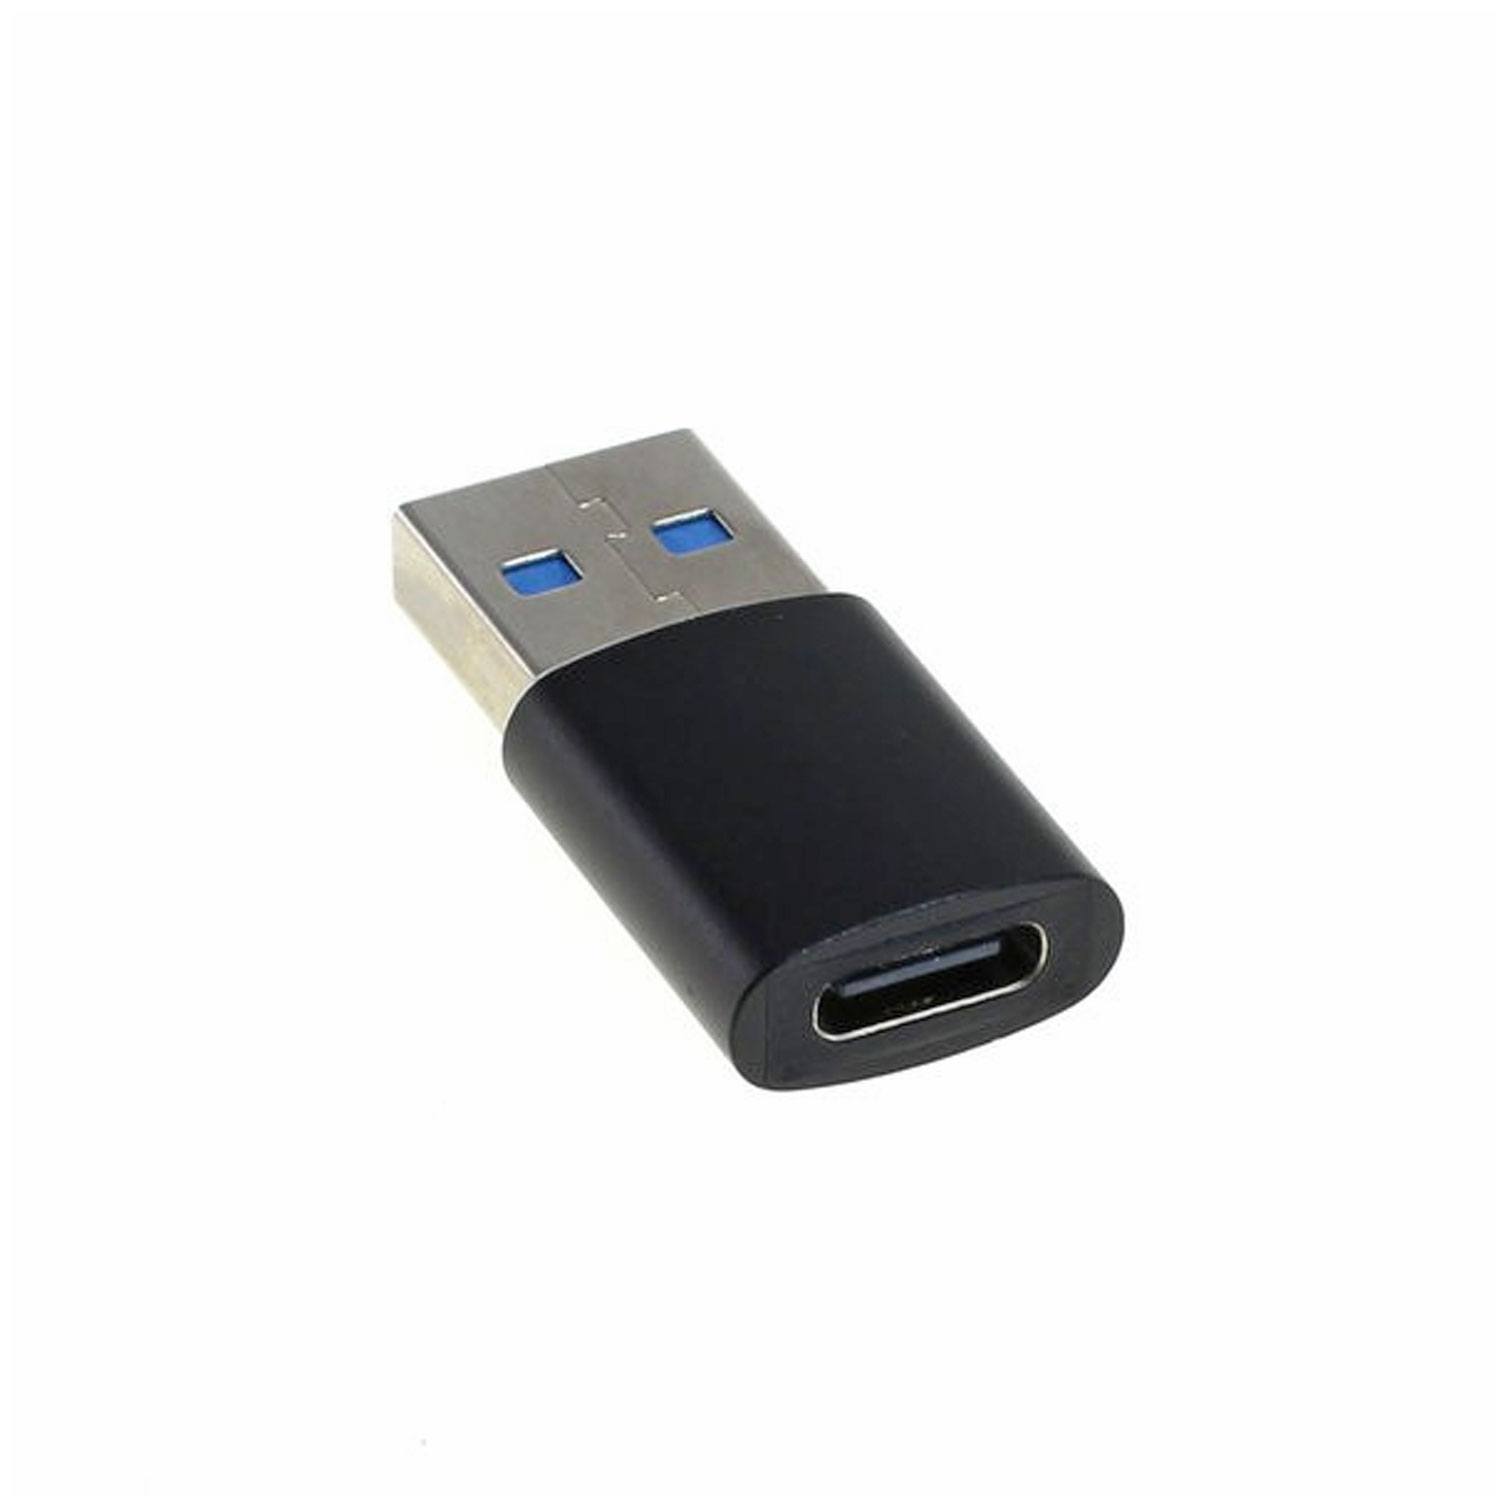 Adapter passend für den USB-A 3.0 Stecker auf die USB Type C Buchse